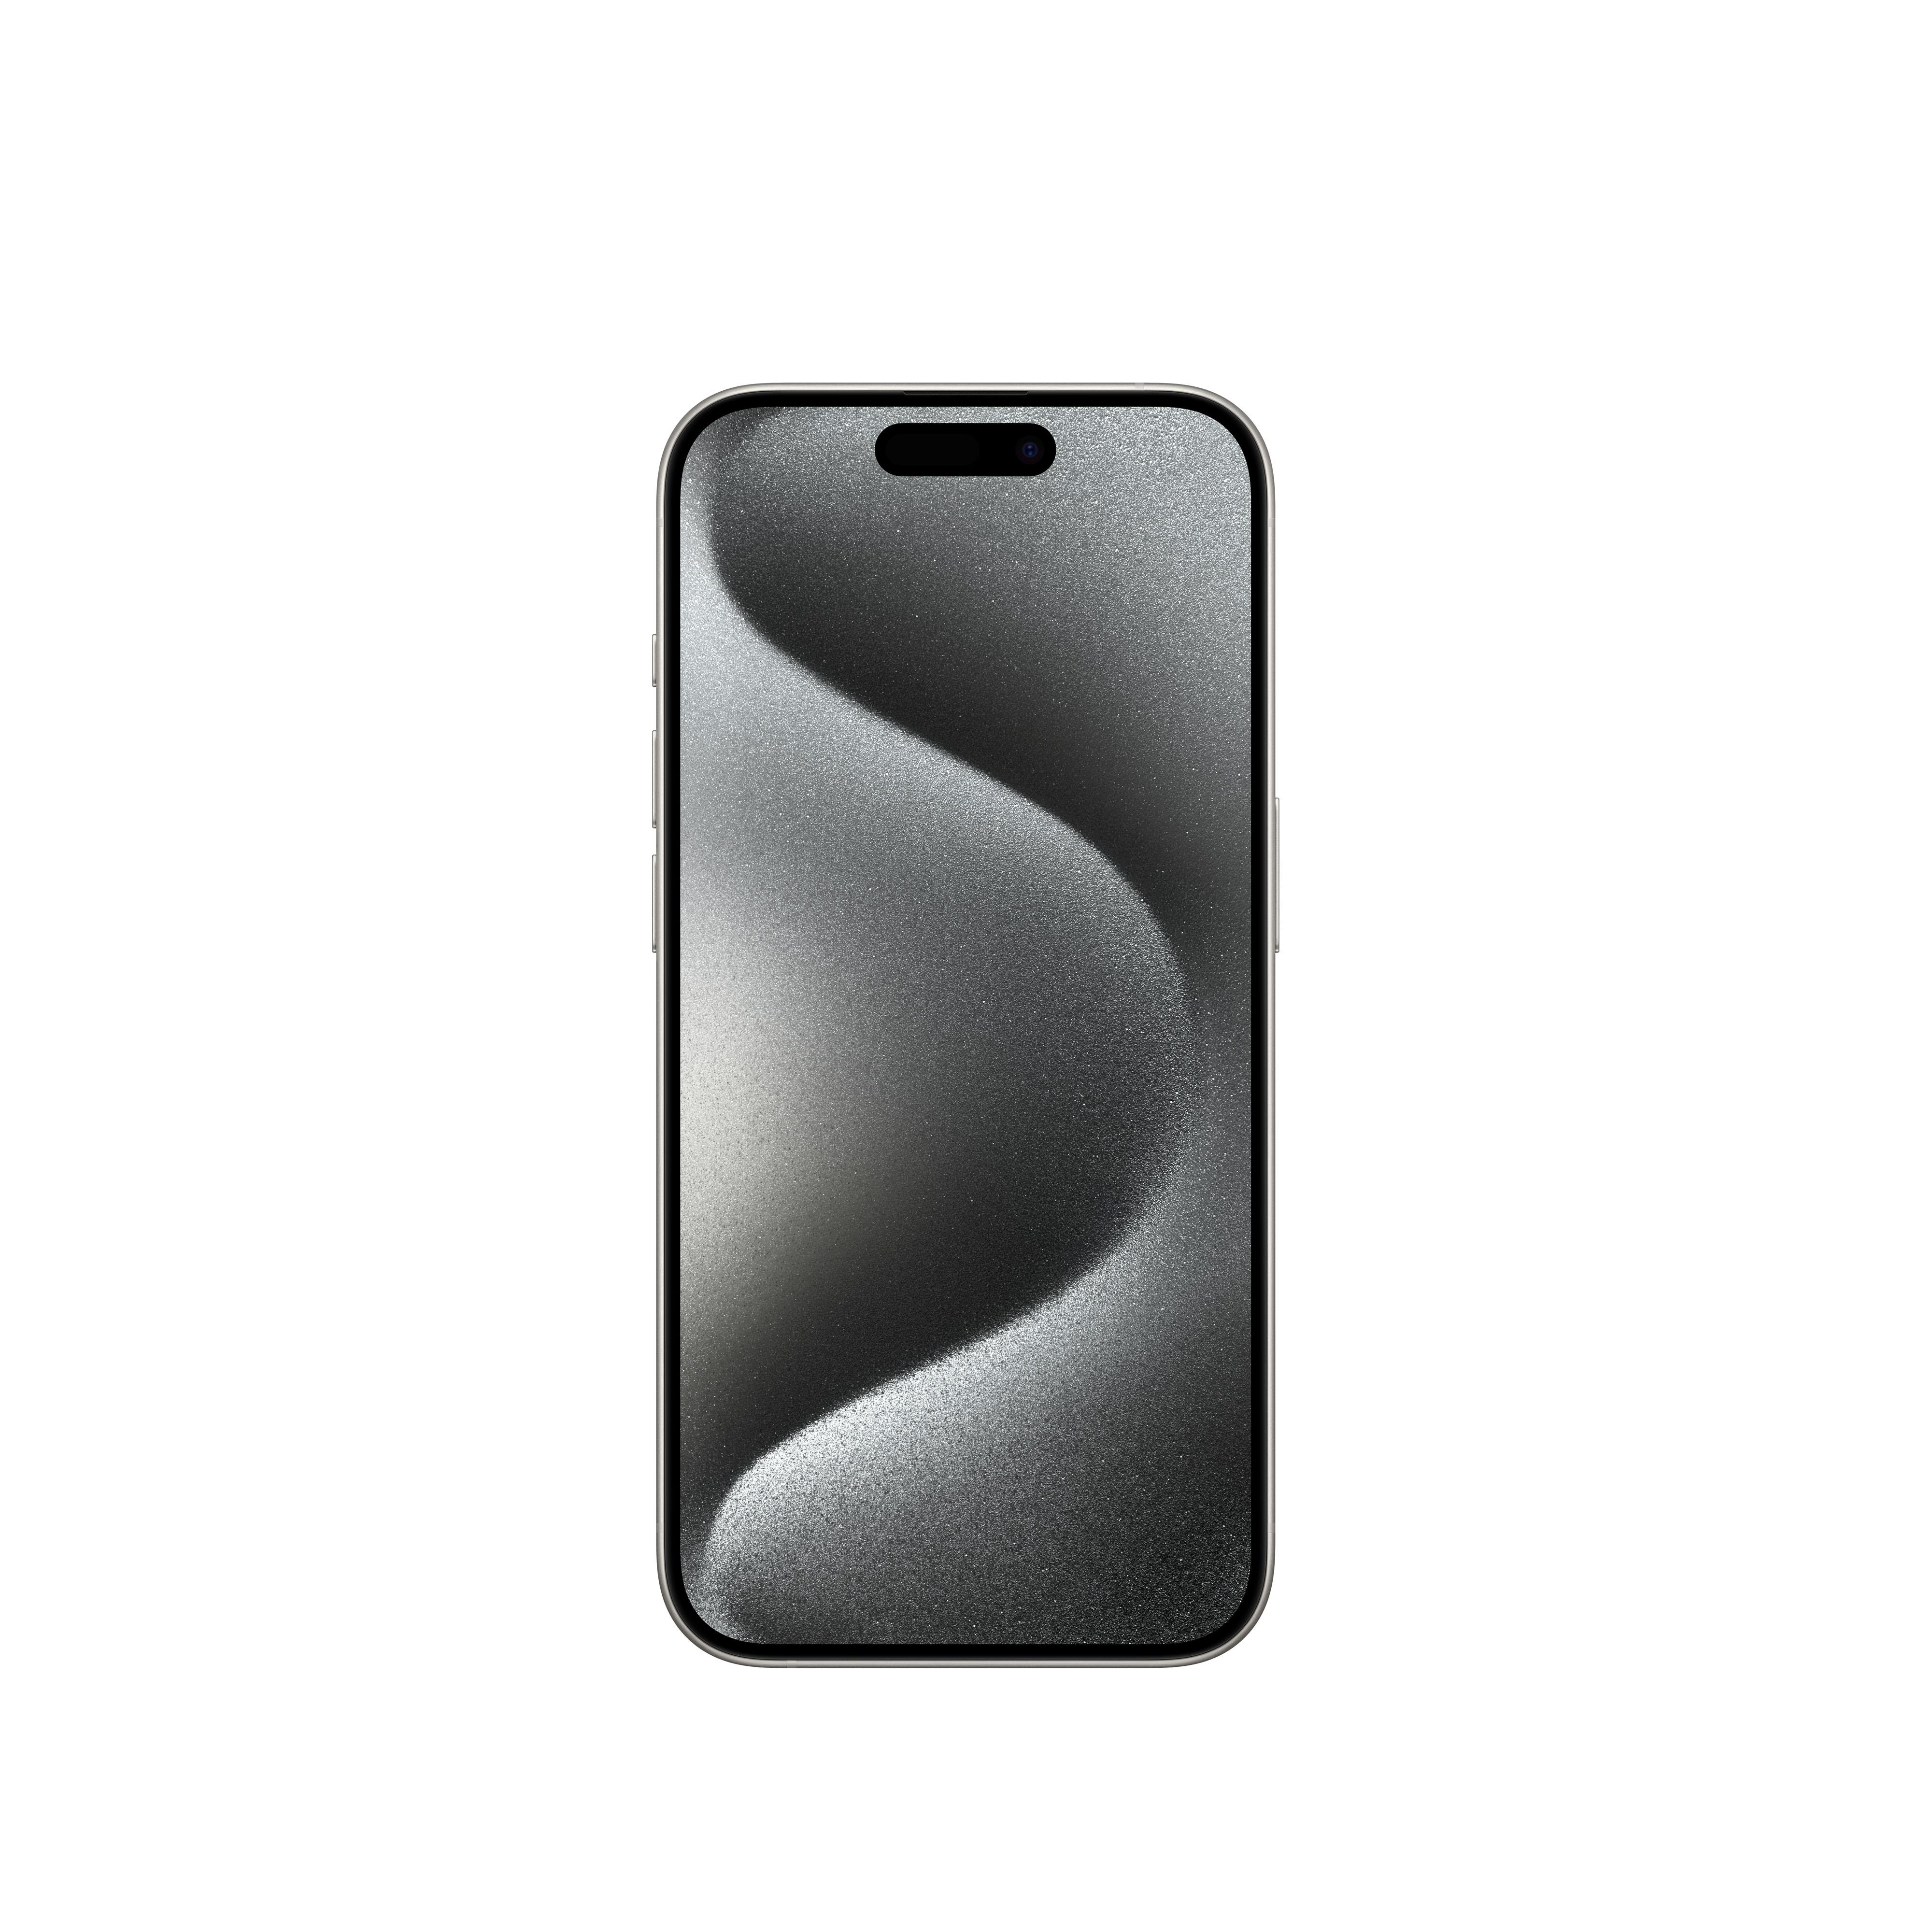 GB iPhone SIM Pro 5G Weiß 256 Dual Titan APPLE 15